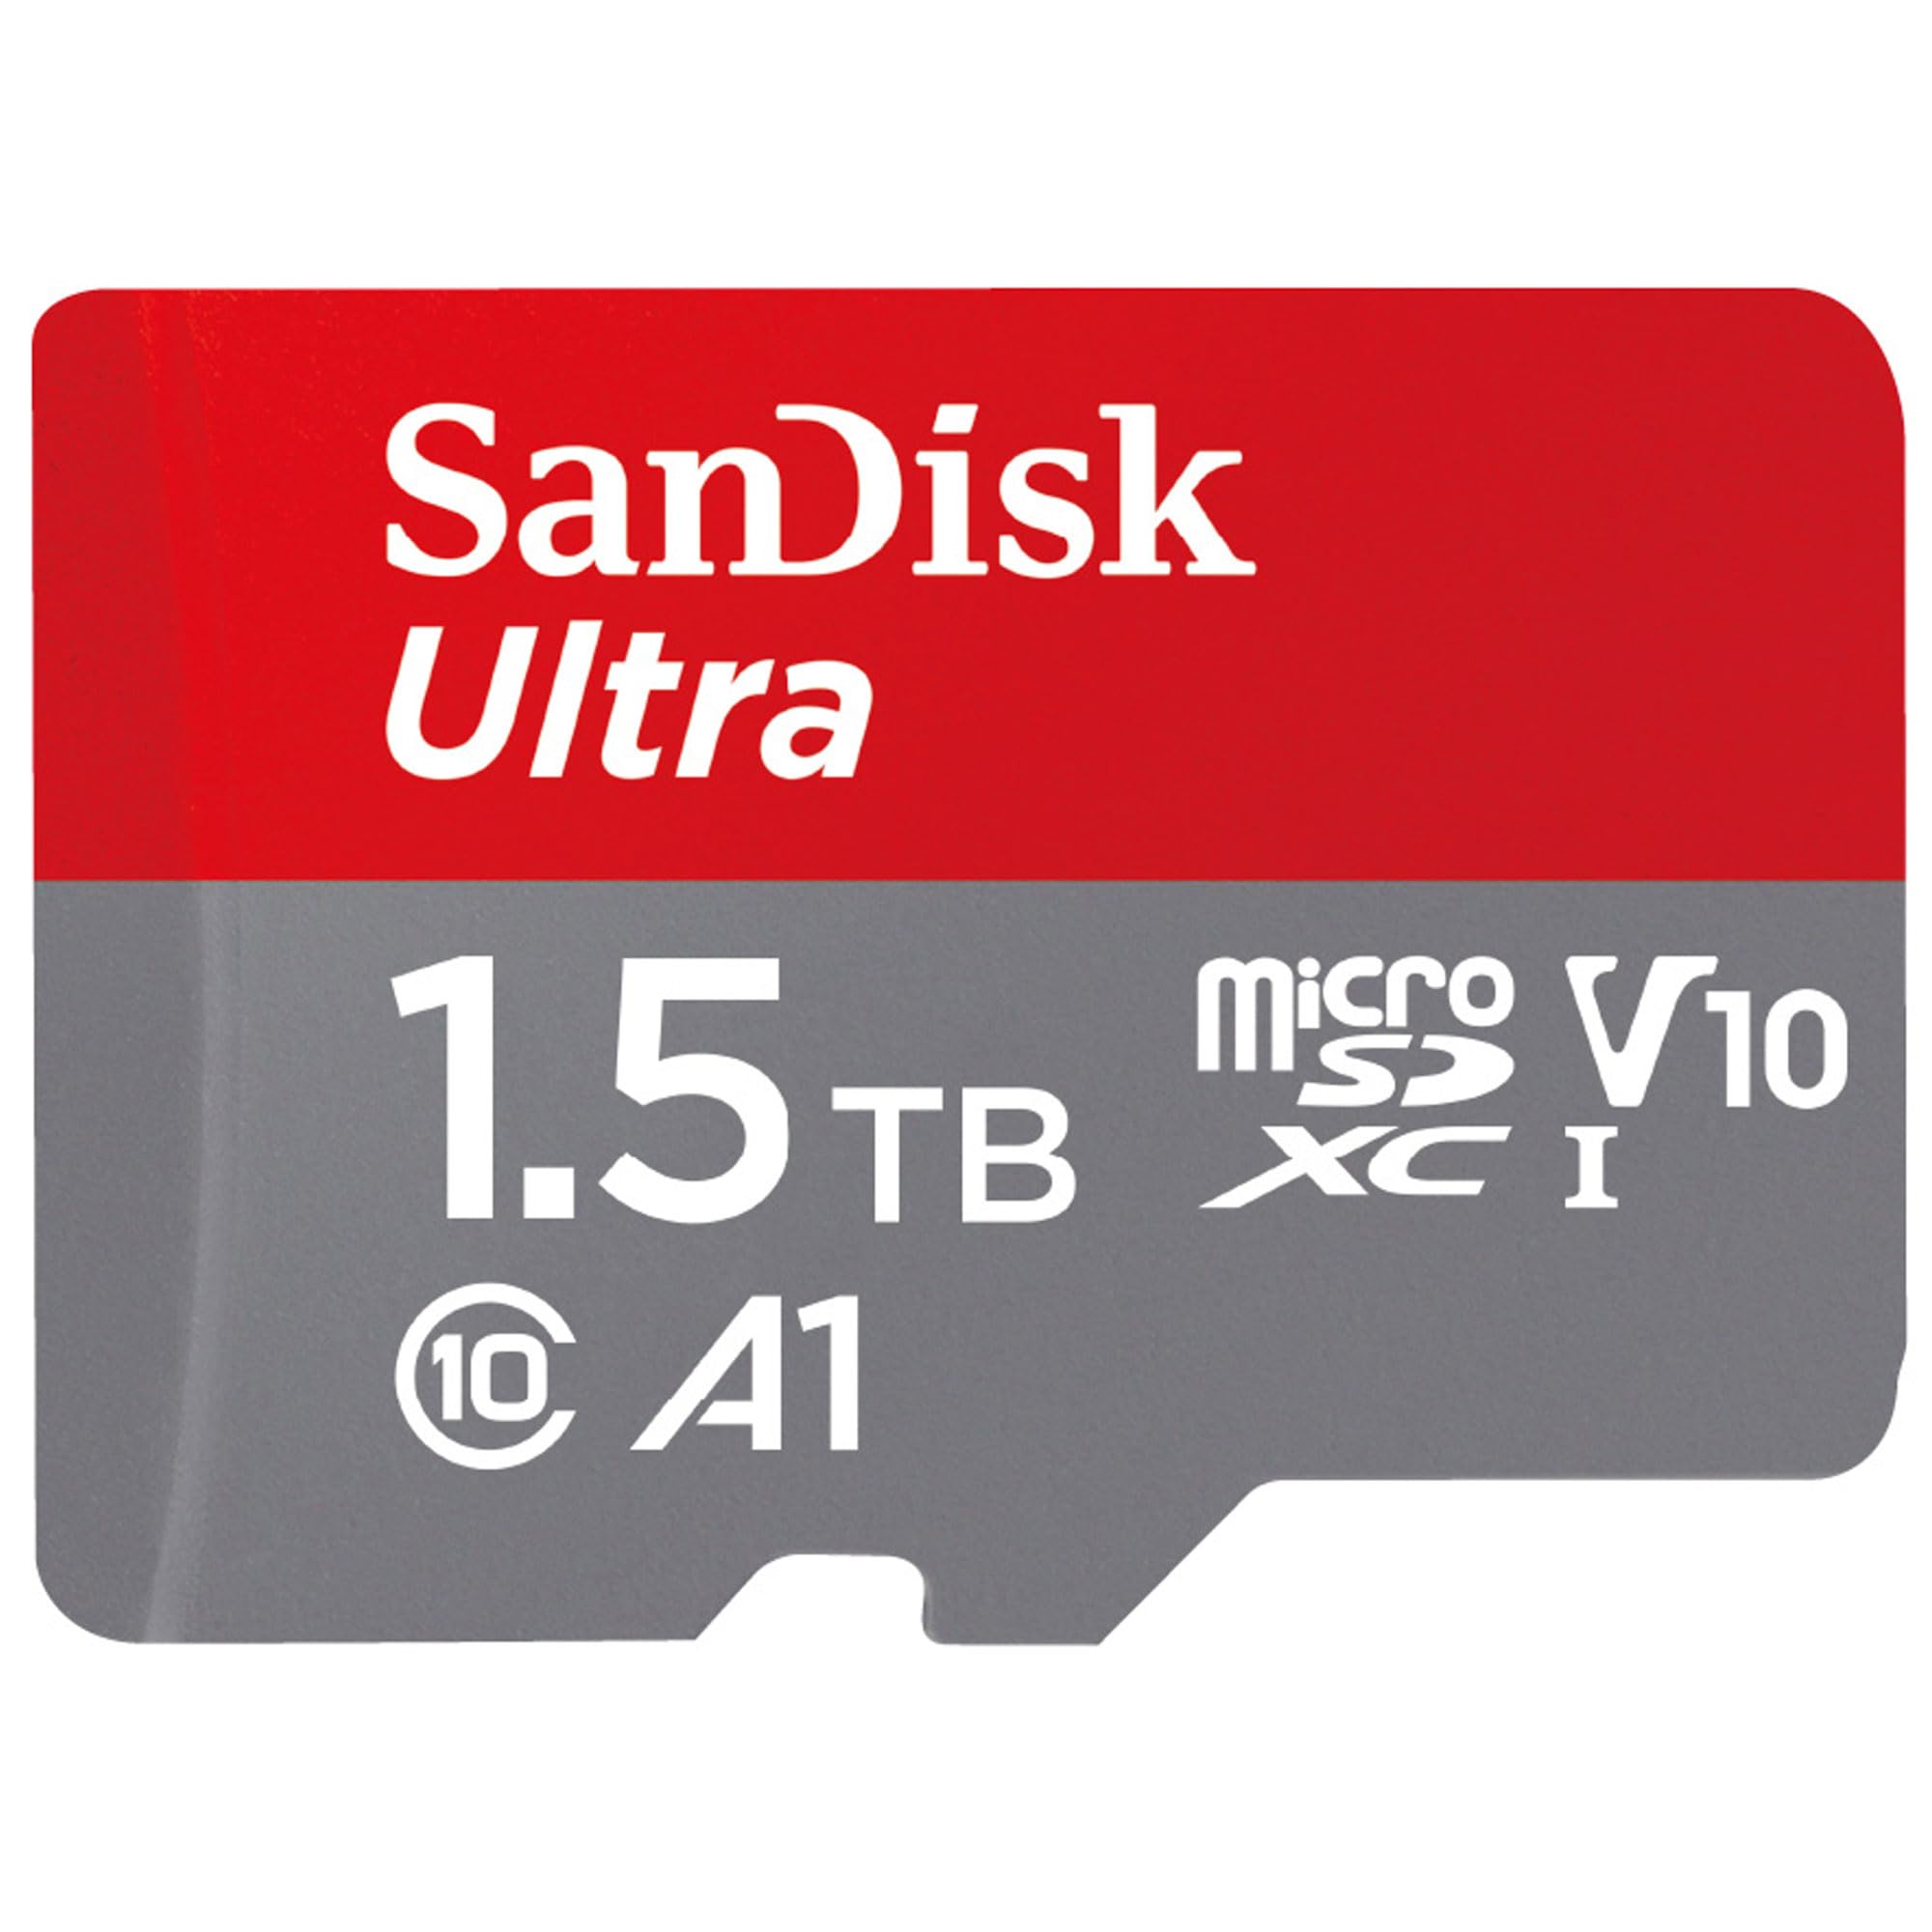 サンディスク 正規品 microSDカード 1.5TB UHS-I Class10 10年間限定保証 SanDisk Ultra SDSQUAC-1T50-GH3MA 新パッケージ